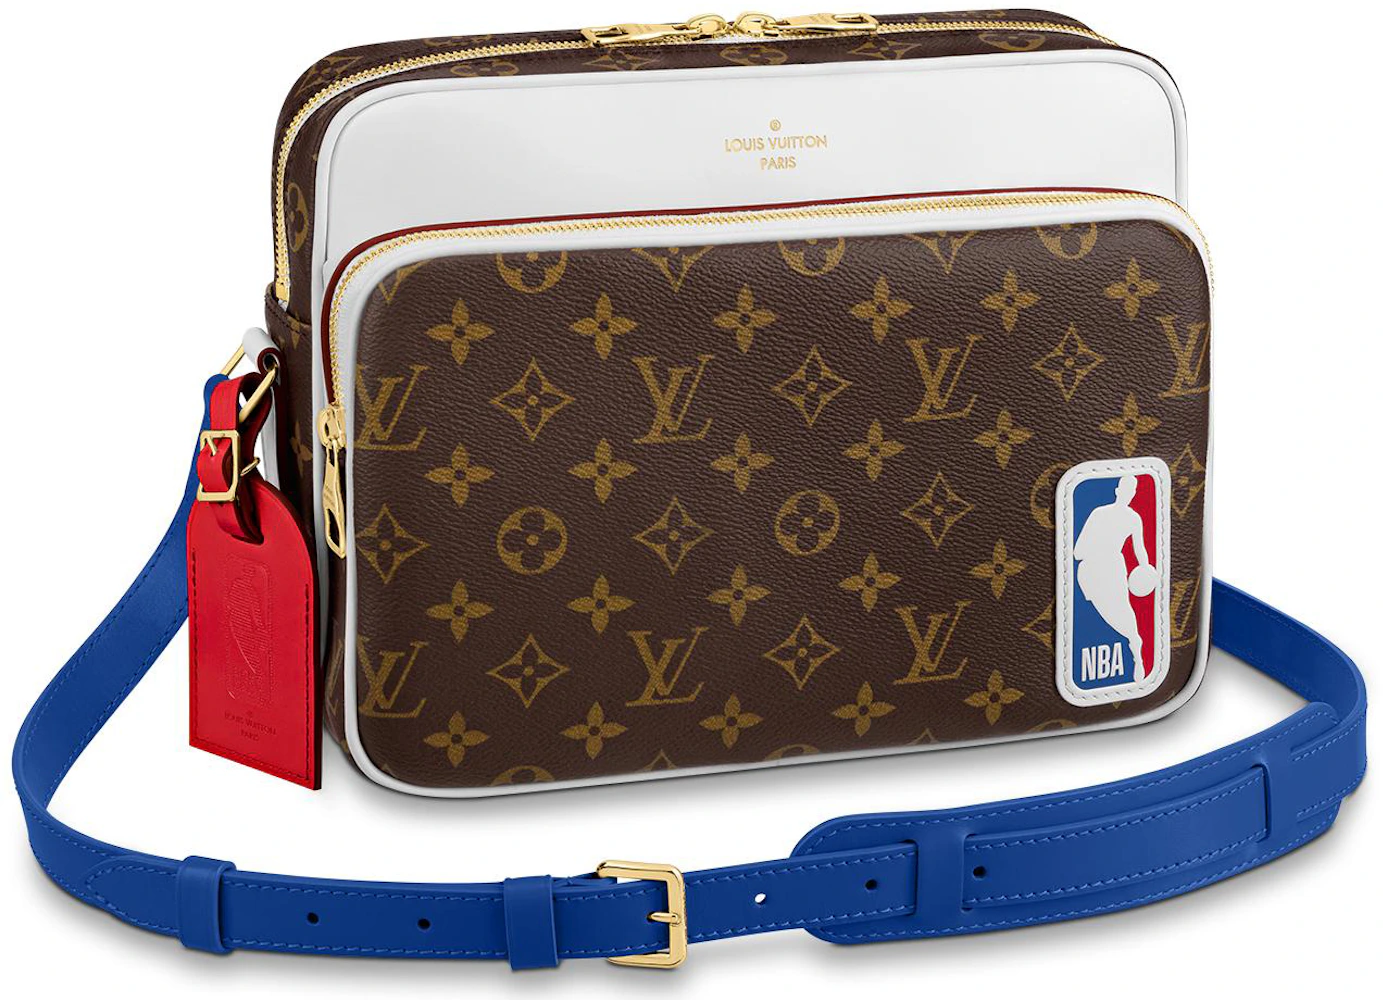 Mens Louis Vuitton x NBA Basketball Messenger Bag Unboxing